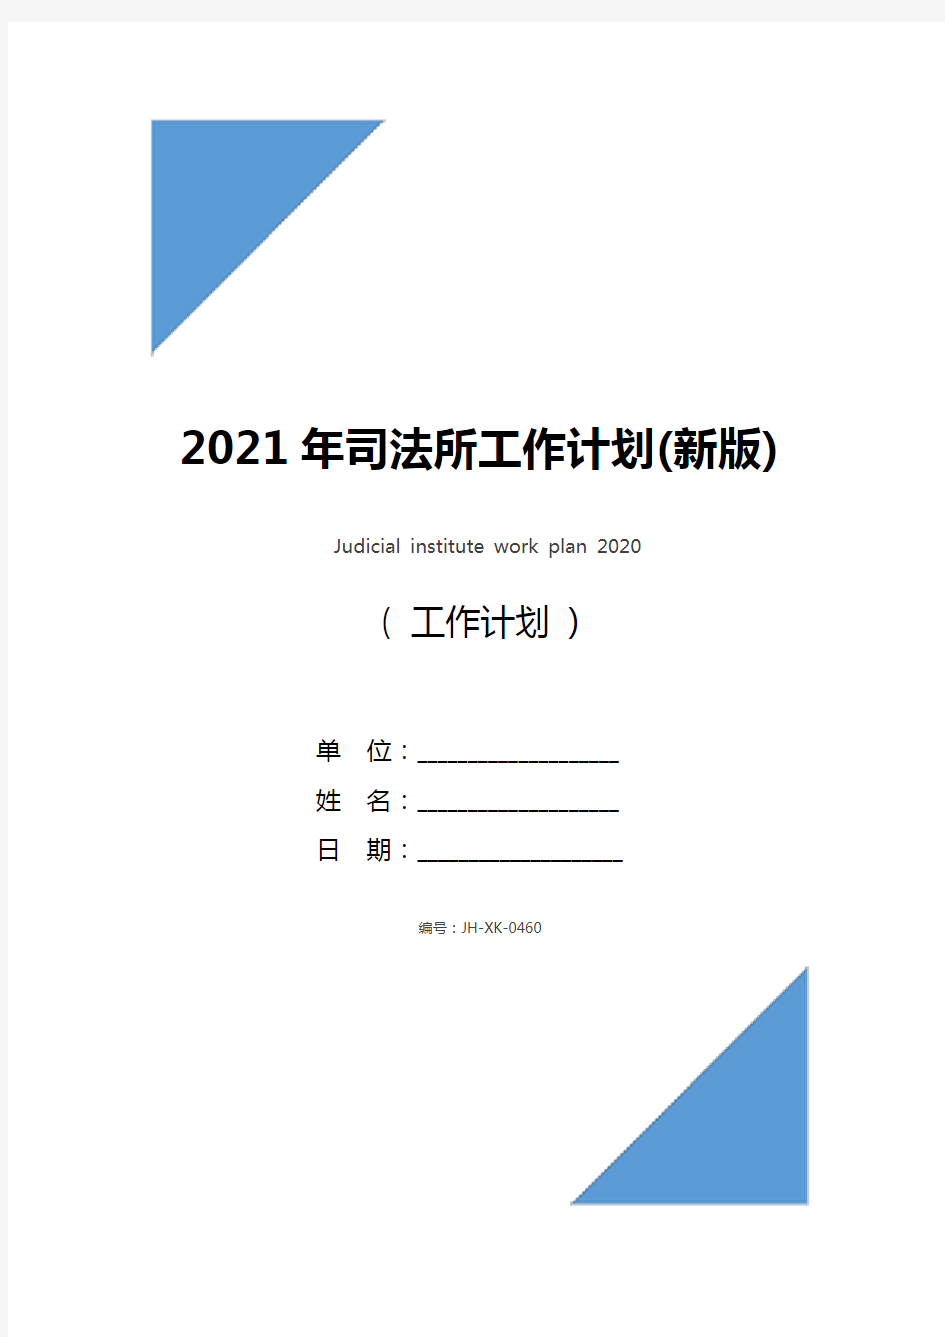 2021年司法所工作计划(新版)